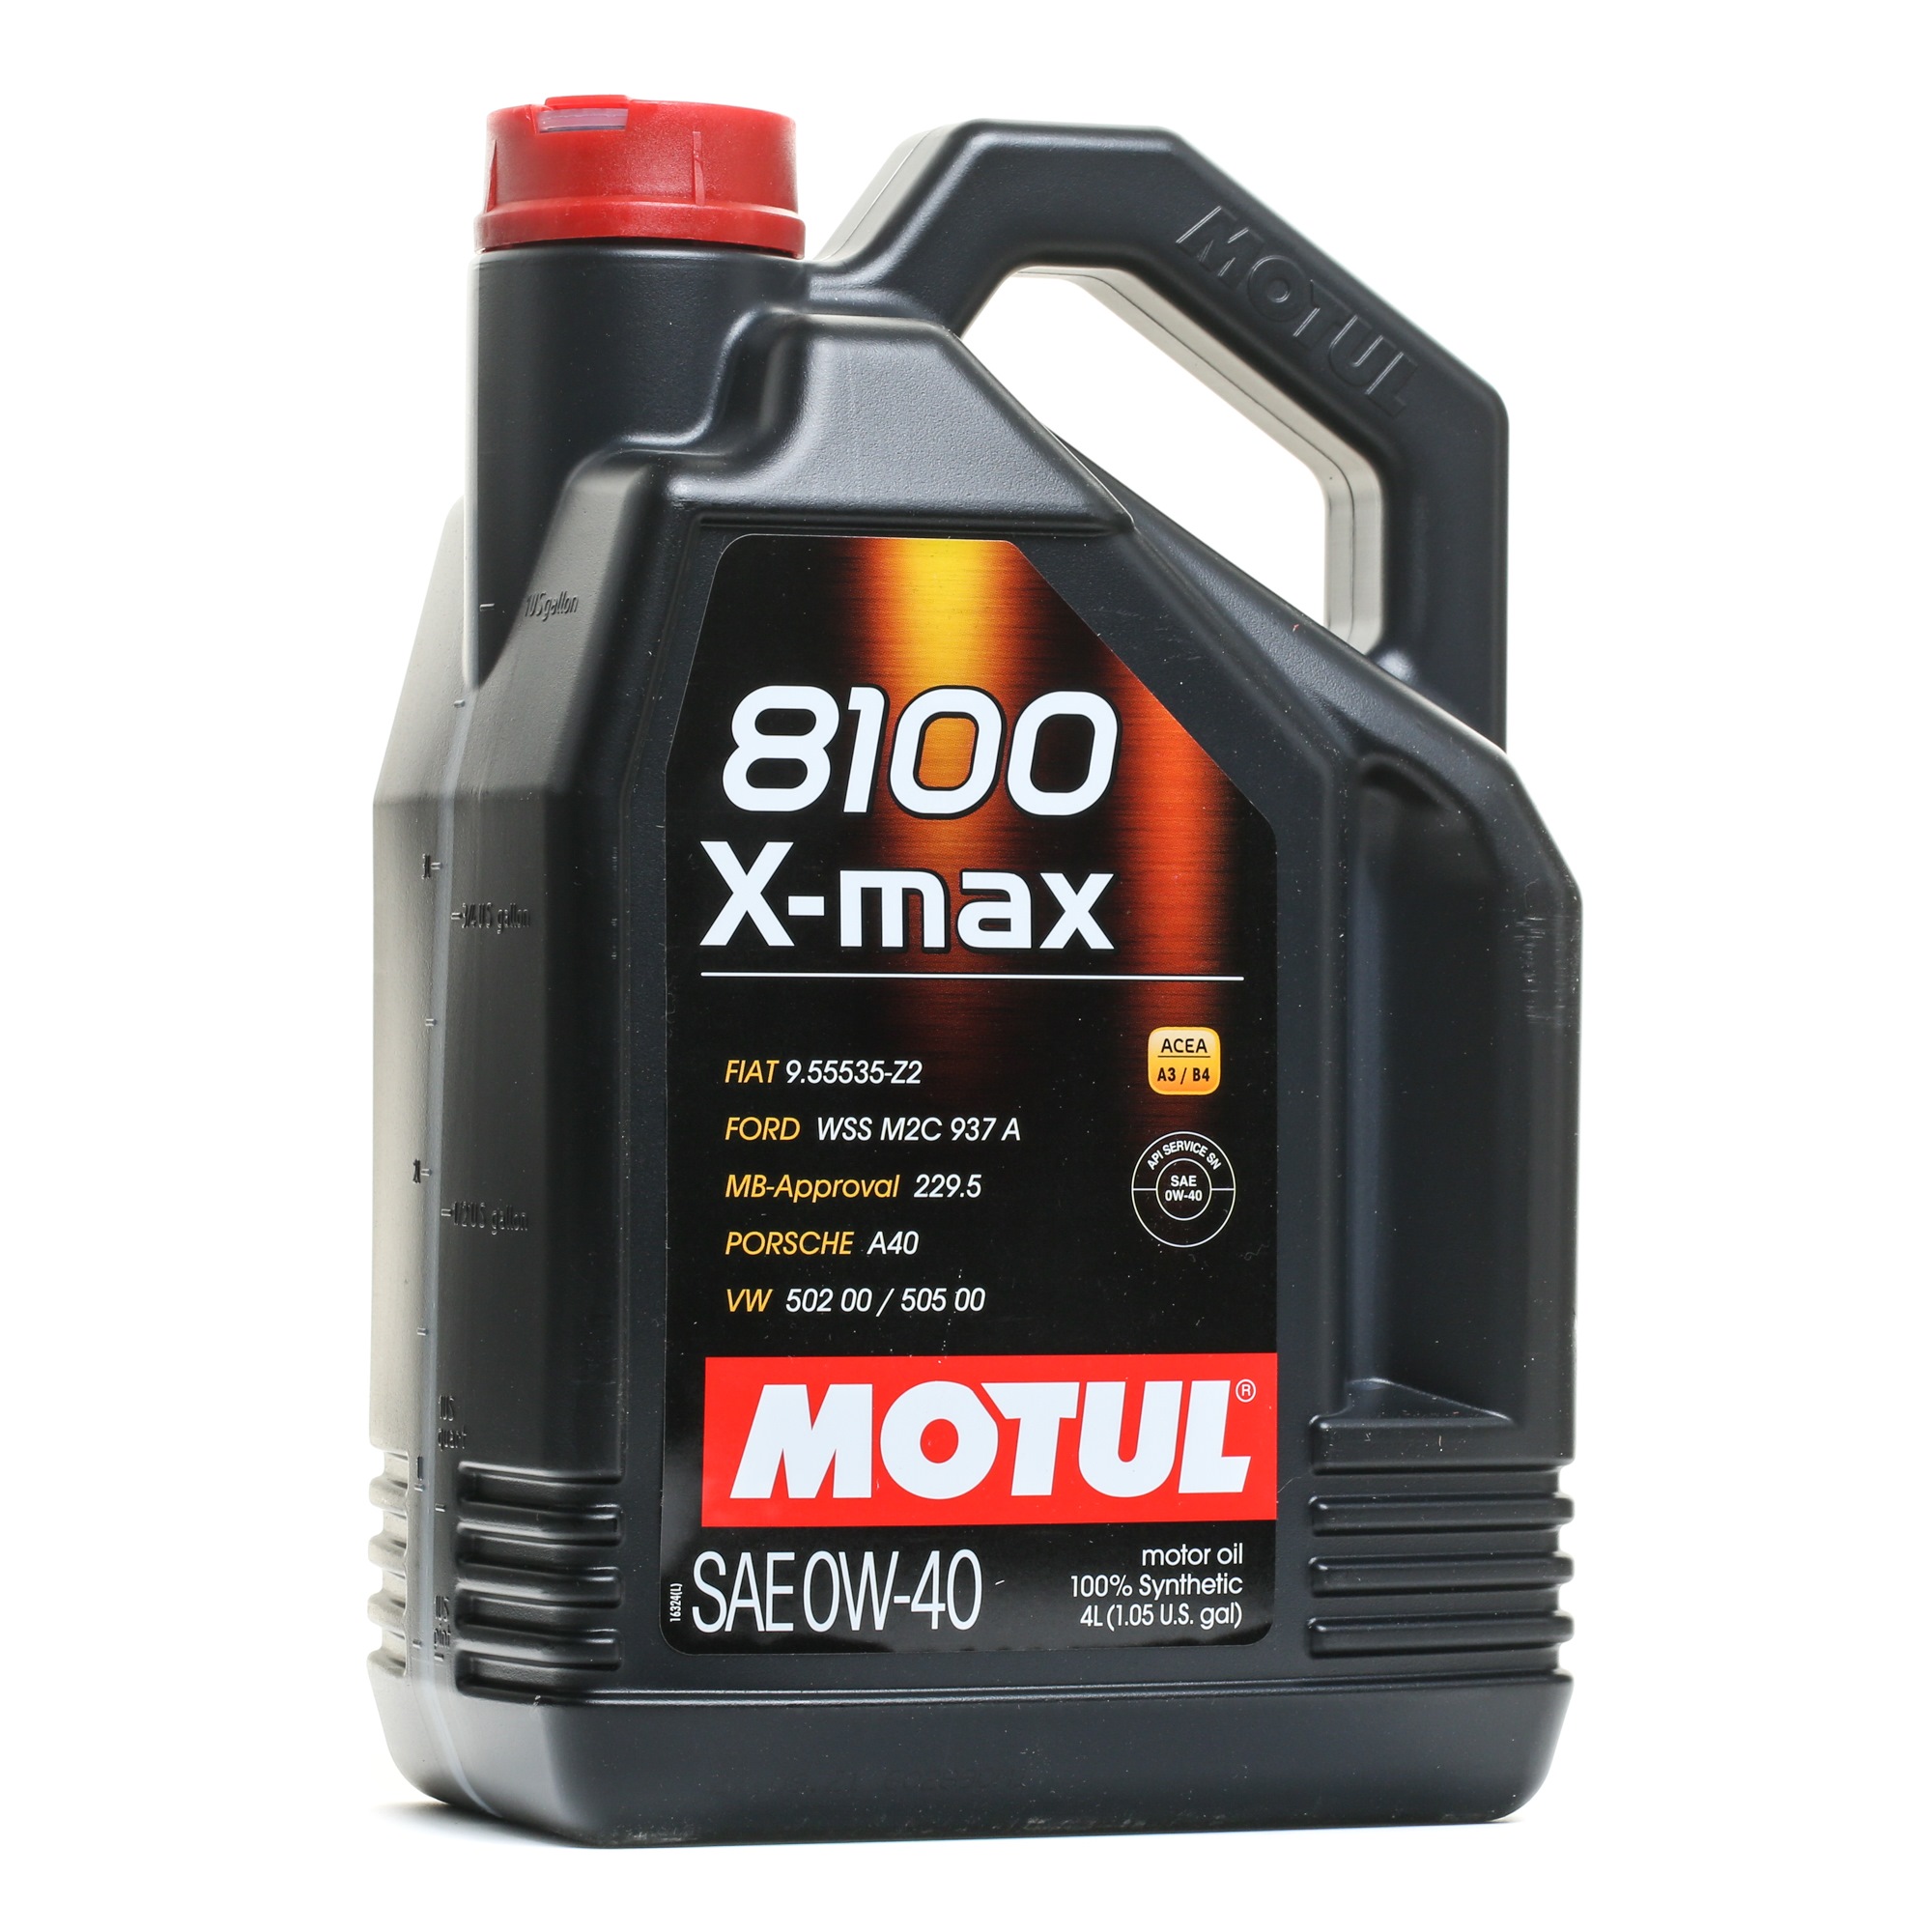 Great value for money - MOTUL Engine oil 104532